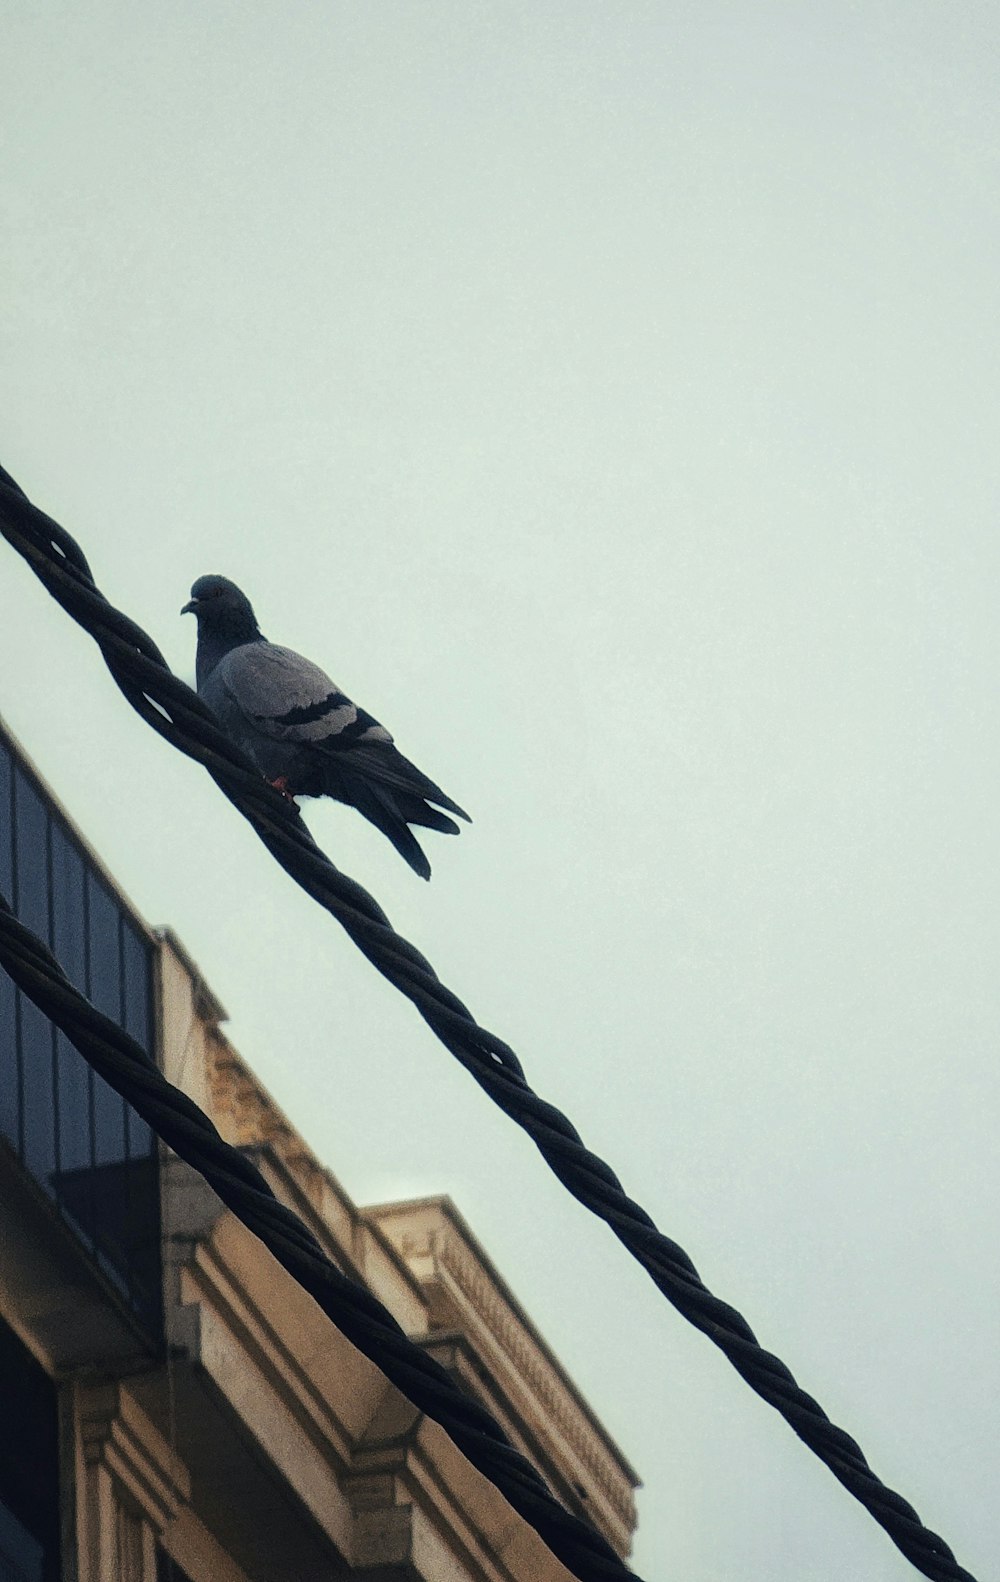 un piccione seduto su una linea elettrica accanto a un edificio